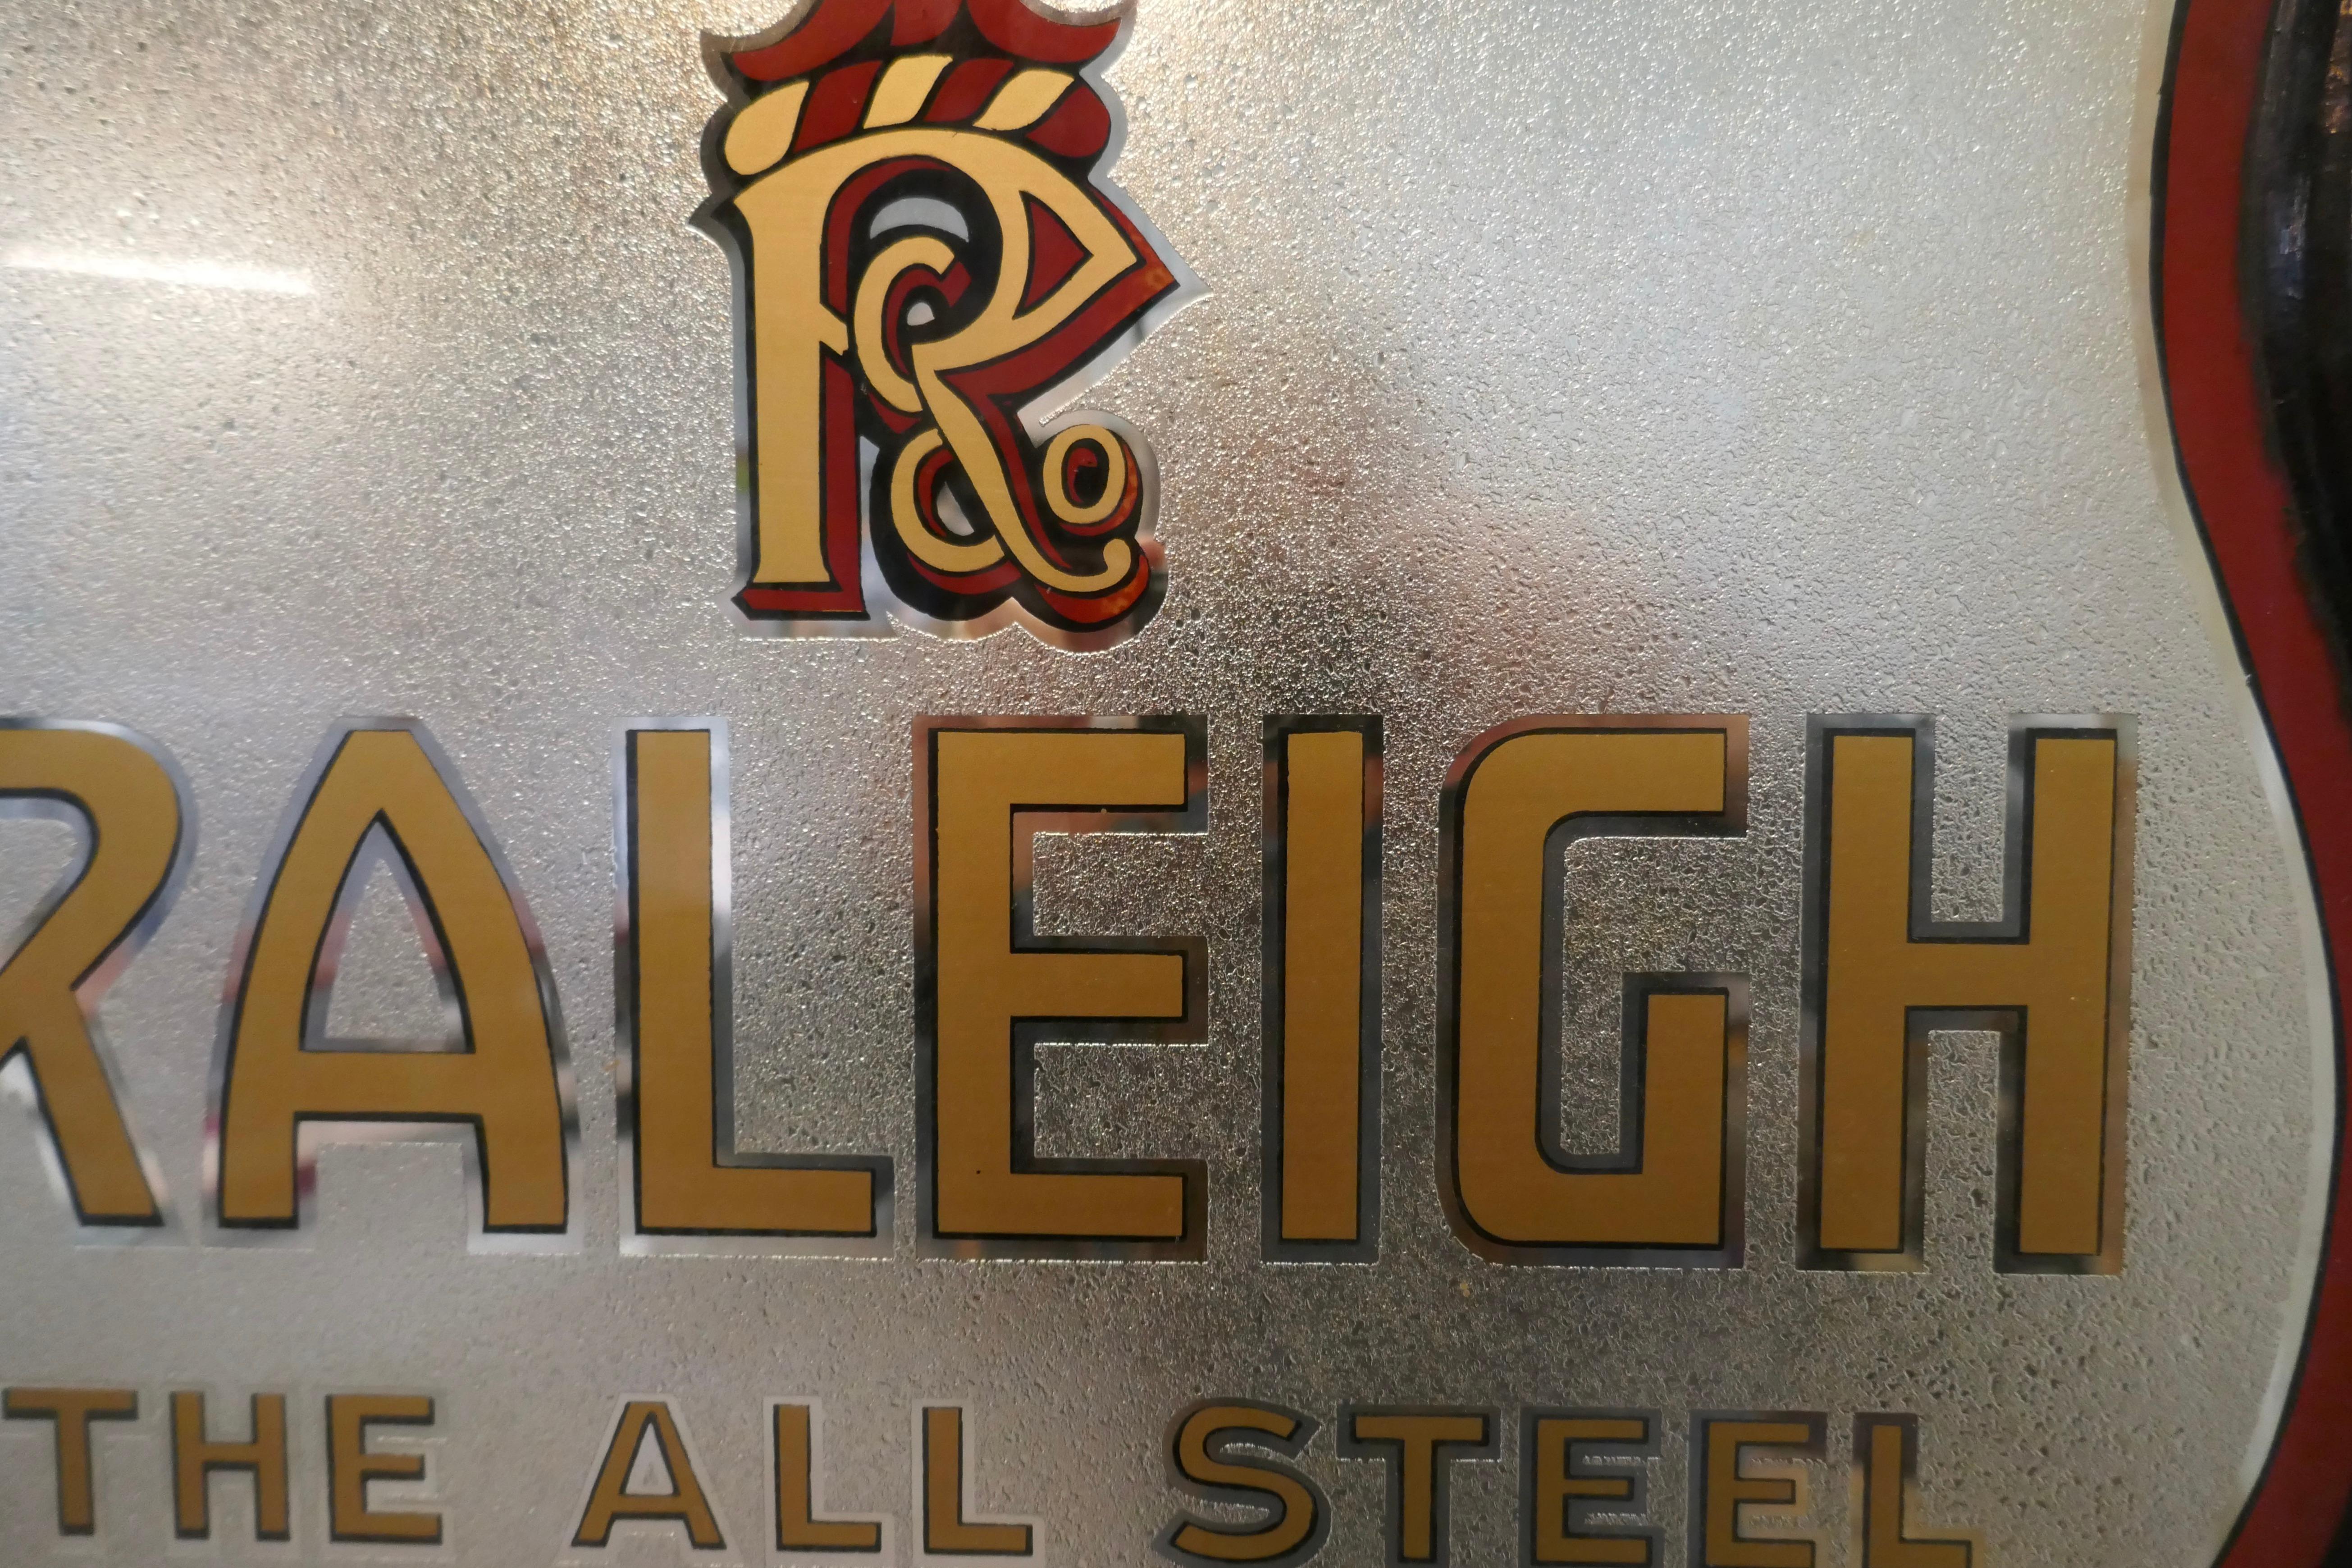 Très rare enseigne de magasin de vélos Raleigh en verre double face.

Il s'agit d'une belle enseigne de magasin de vélo Raleigh, elle est faite dans un miroir de finition craquelé avec du texte émaillé en rouge et jaune foncé.

Une belle pièce,